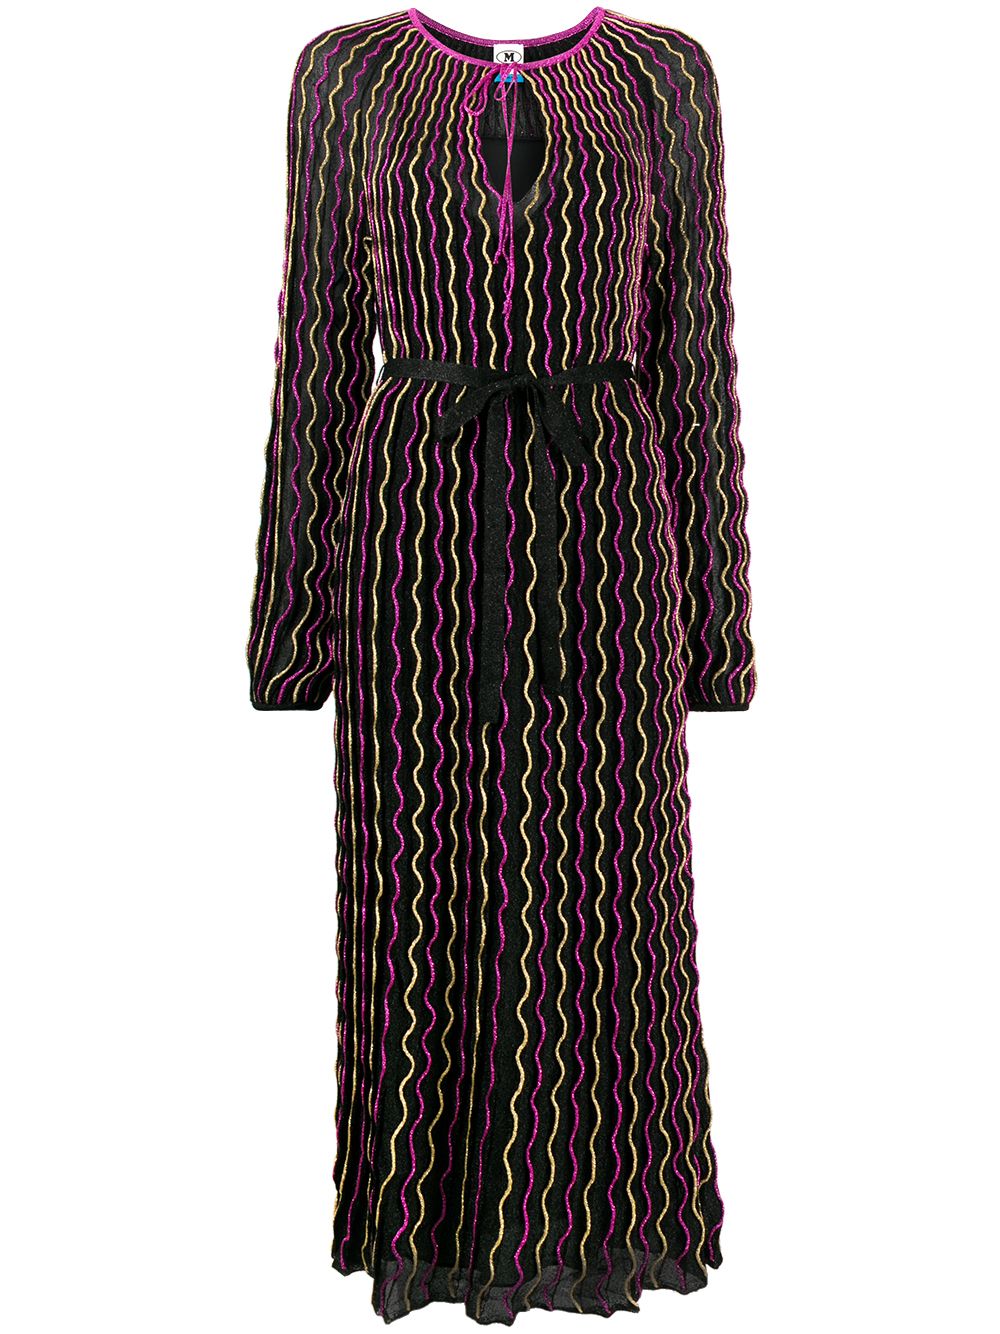 фото Missoni платье макси с узором зигзаг